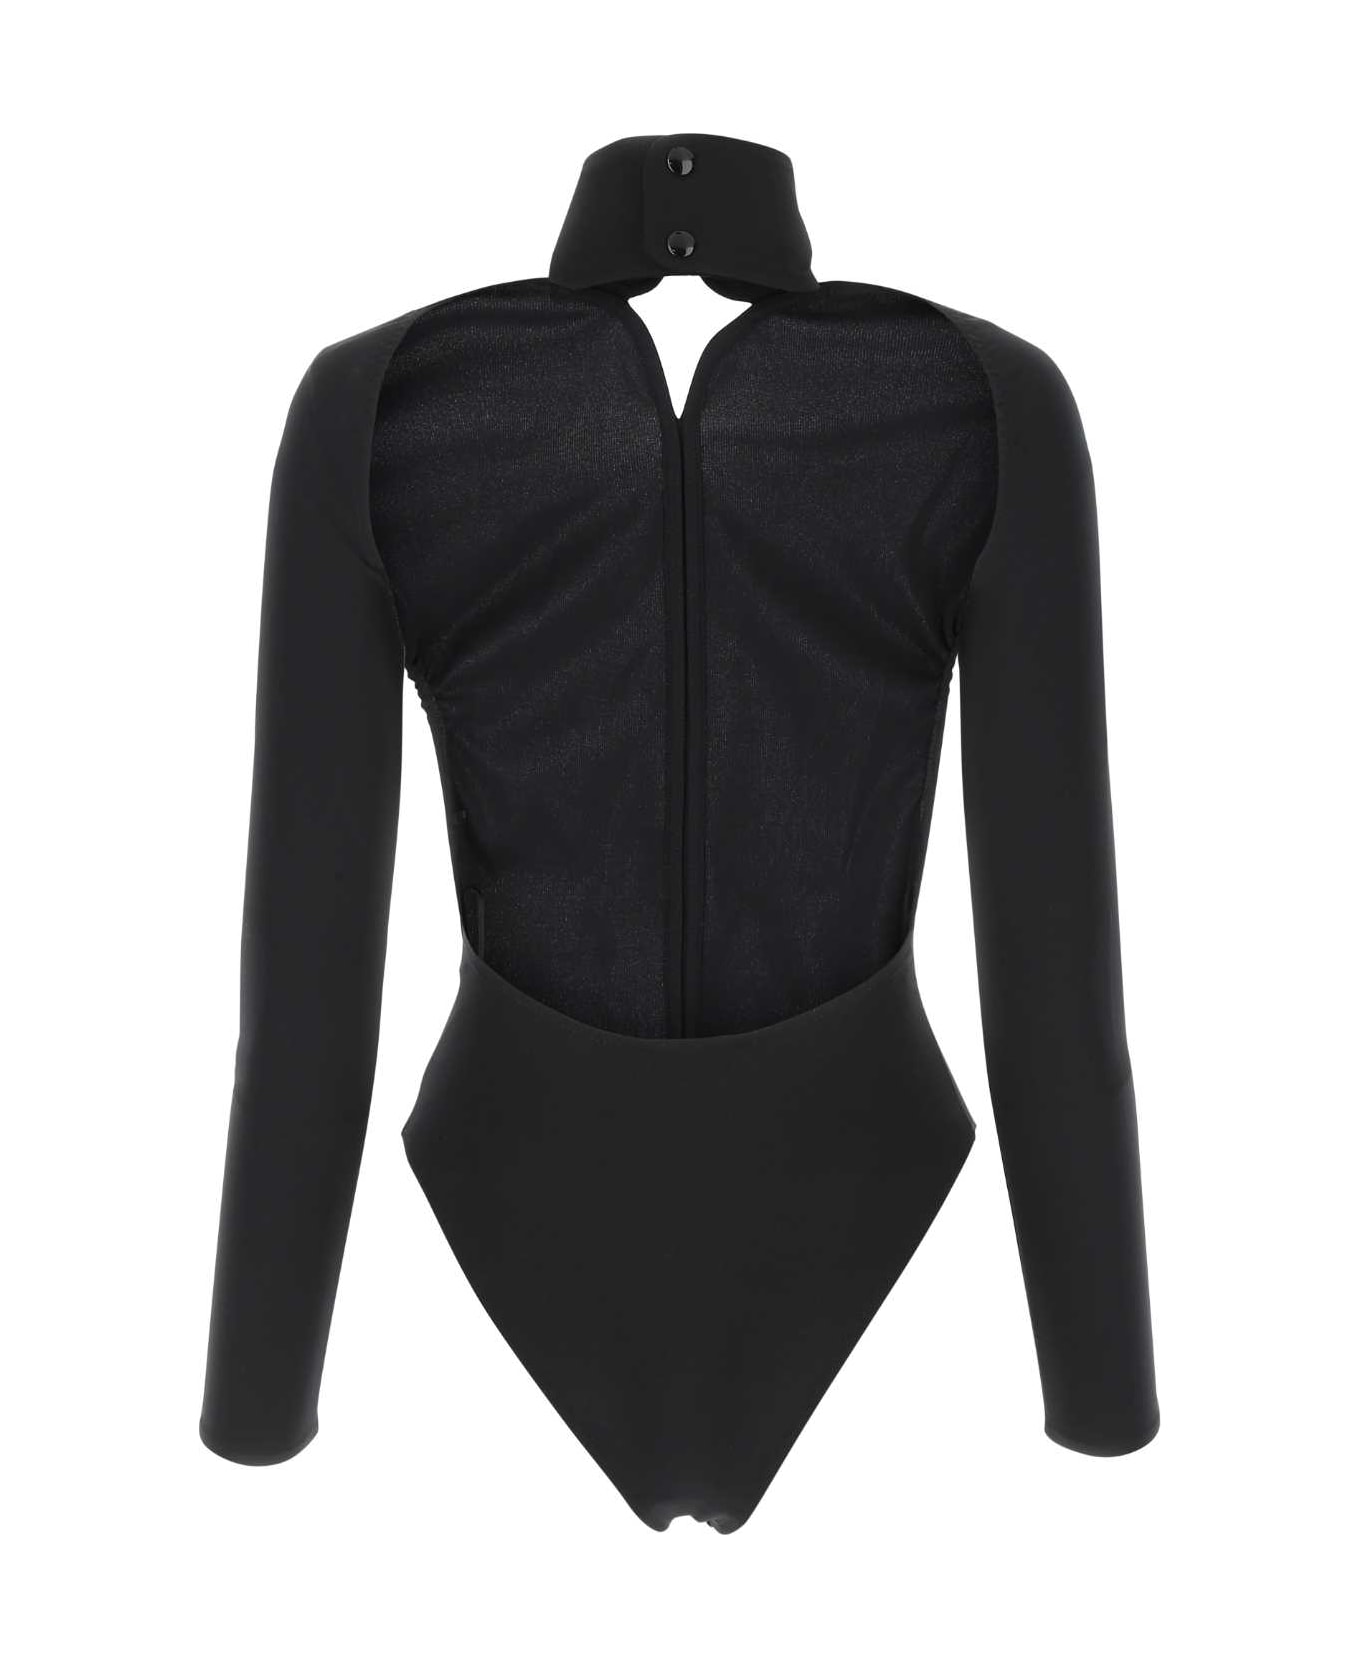 Courrèges Black Stretch Viscose Blend Bodysuit - 9999